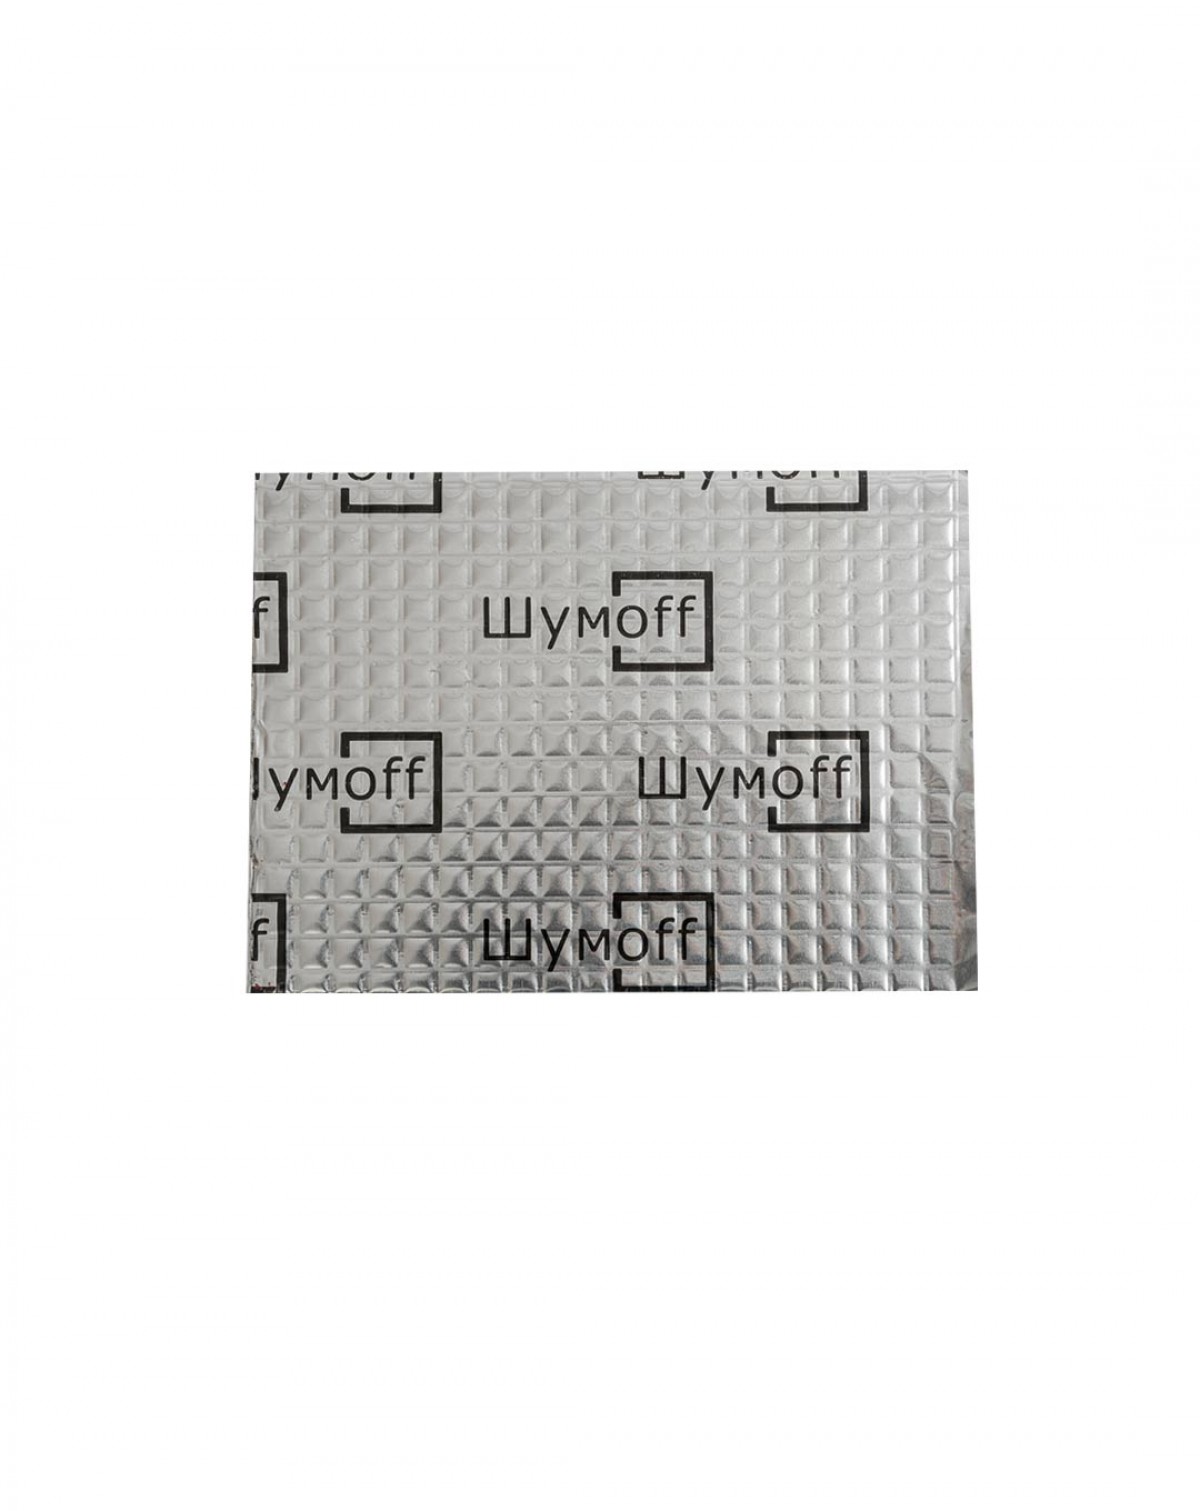 Вибропоглощающий материал для авто Шумофф Light 2 (7 листов) серебристый 37х27 см